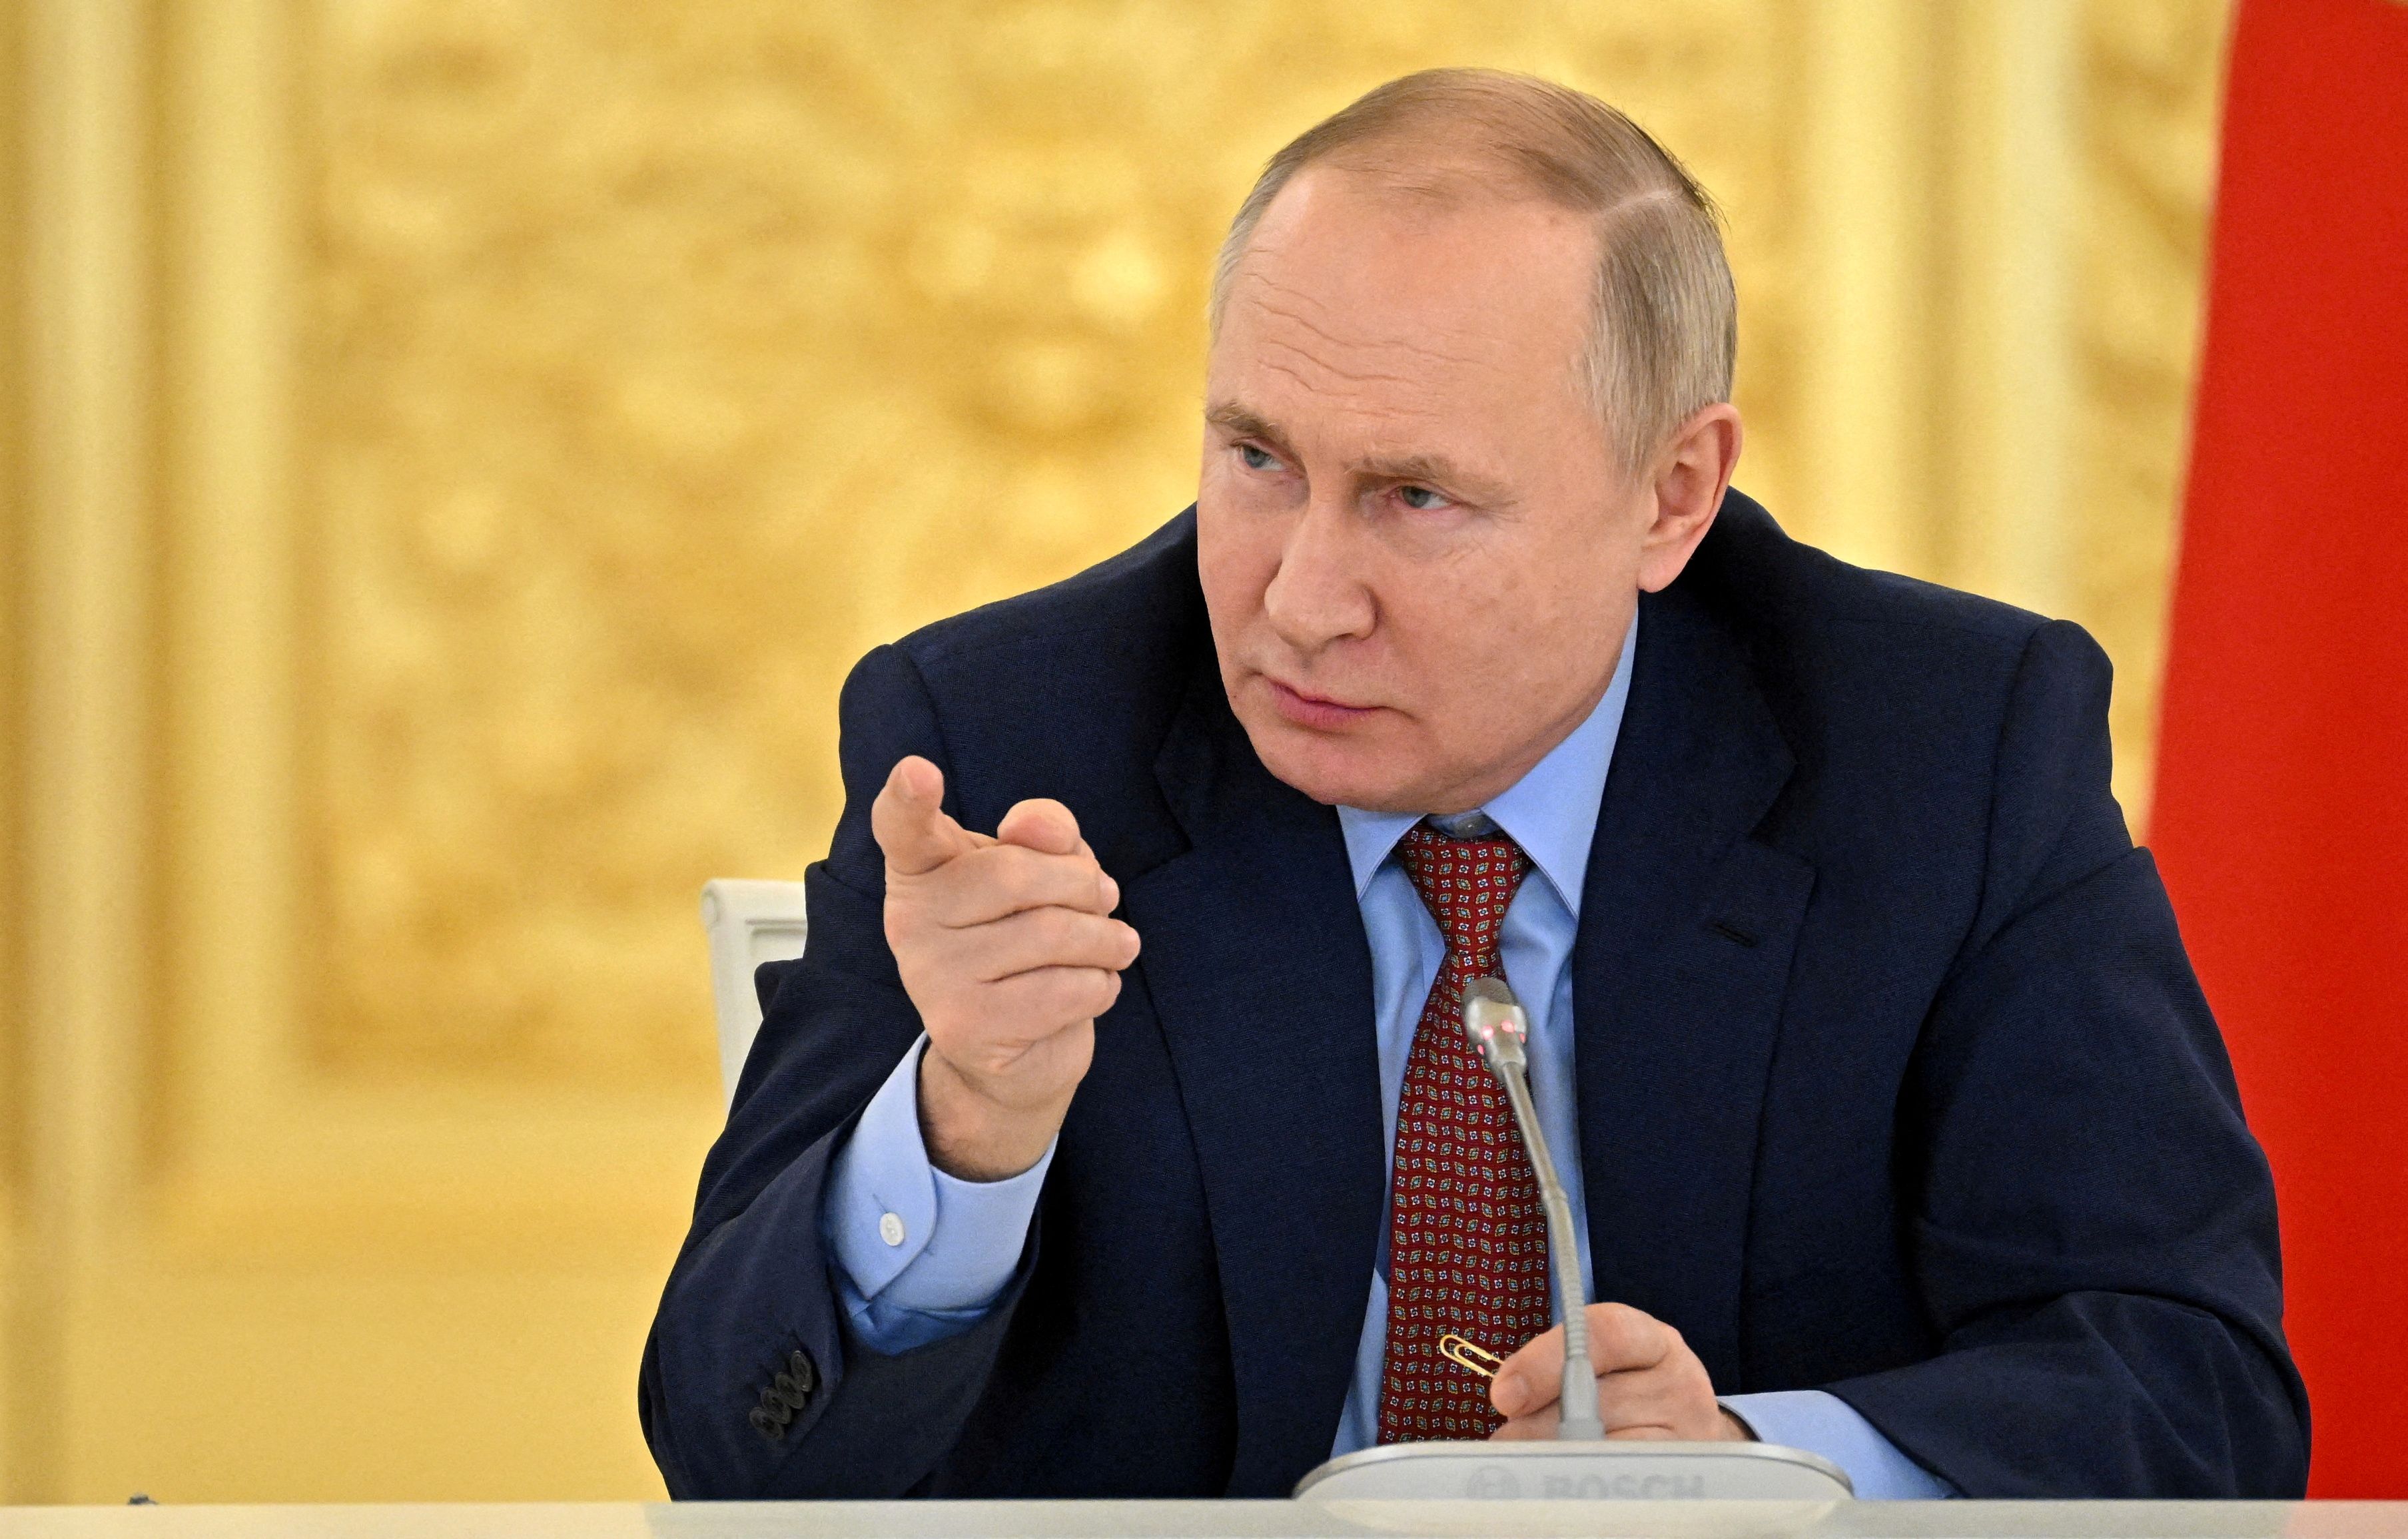 Vladímir Putin tiene 69 años y es el presidente de la Federación Rusa desde el 7 de mayo de 2012. Es el líder político que más tiempo lleva en el cargo desde la disolución de la URSS: 20 años al poder (Reuters)